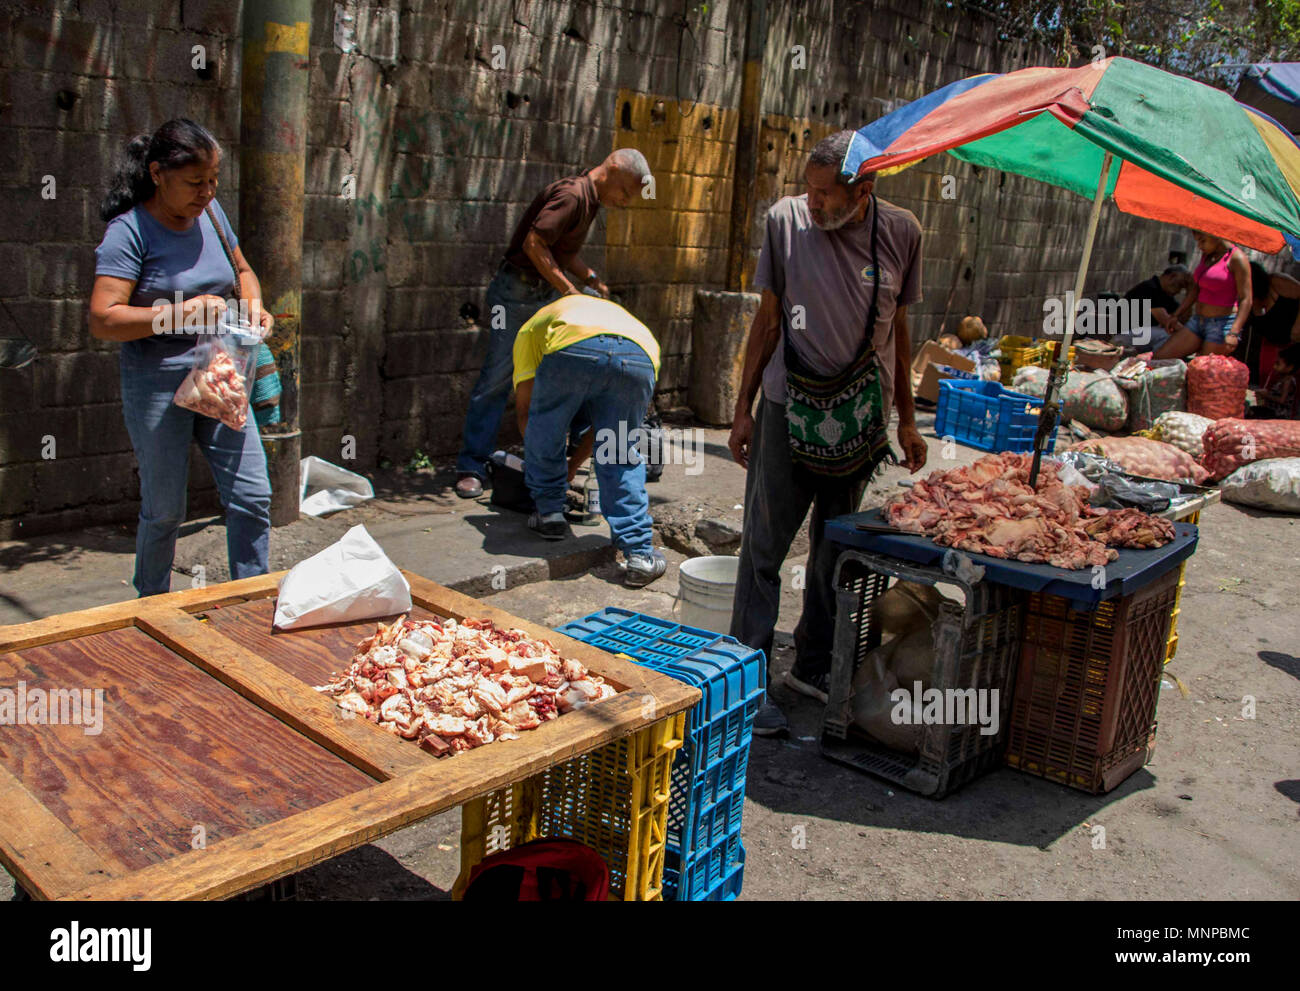 Comerciantes en Caracas apuestan por ofrecer los útiles escolares